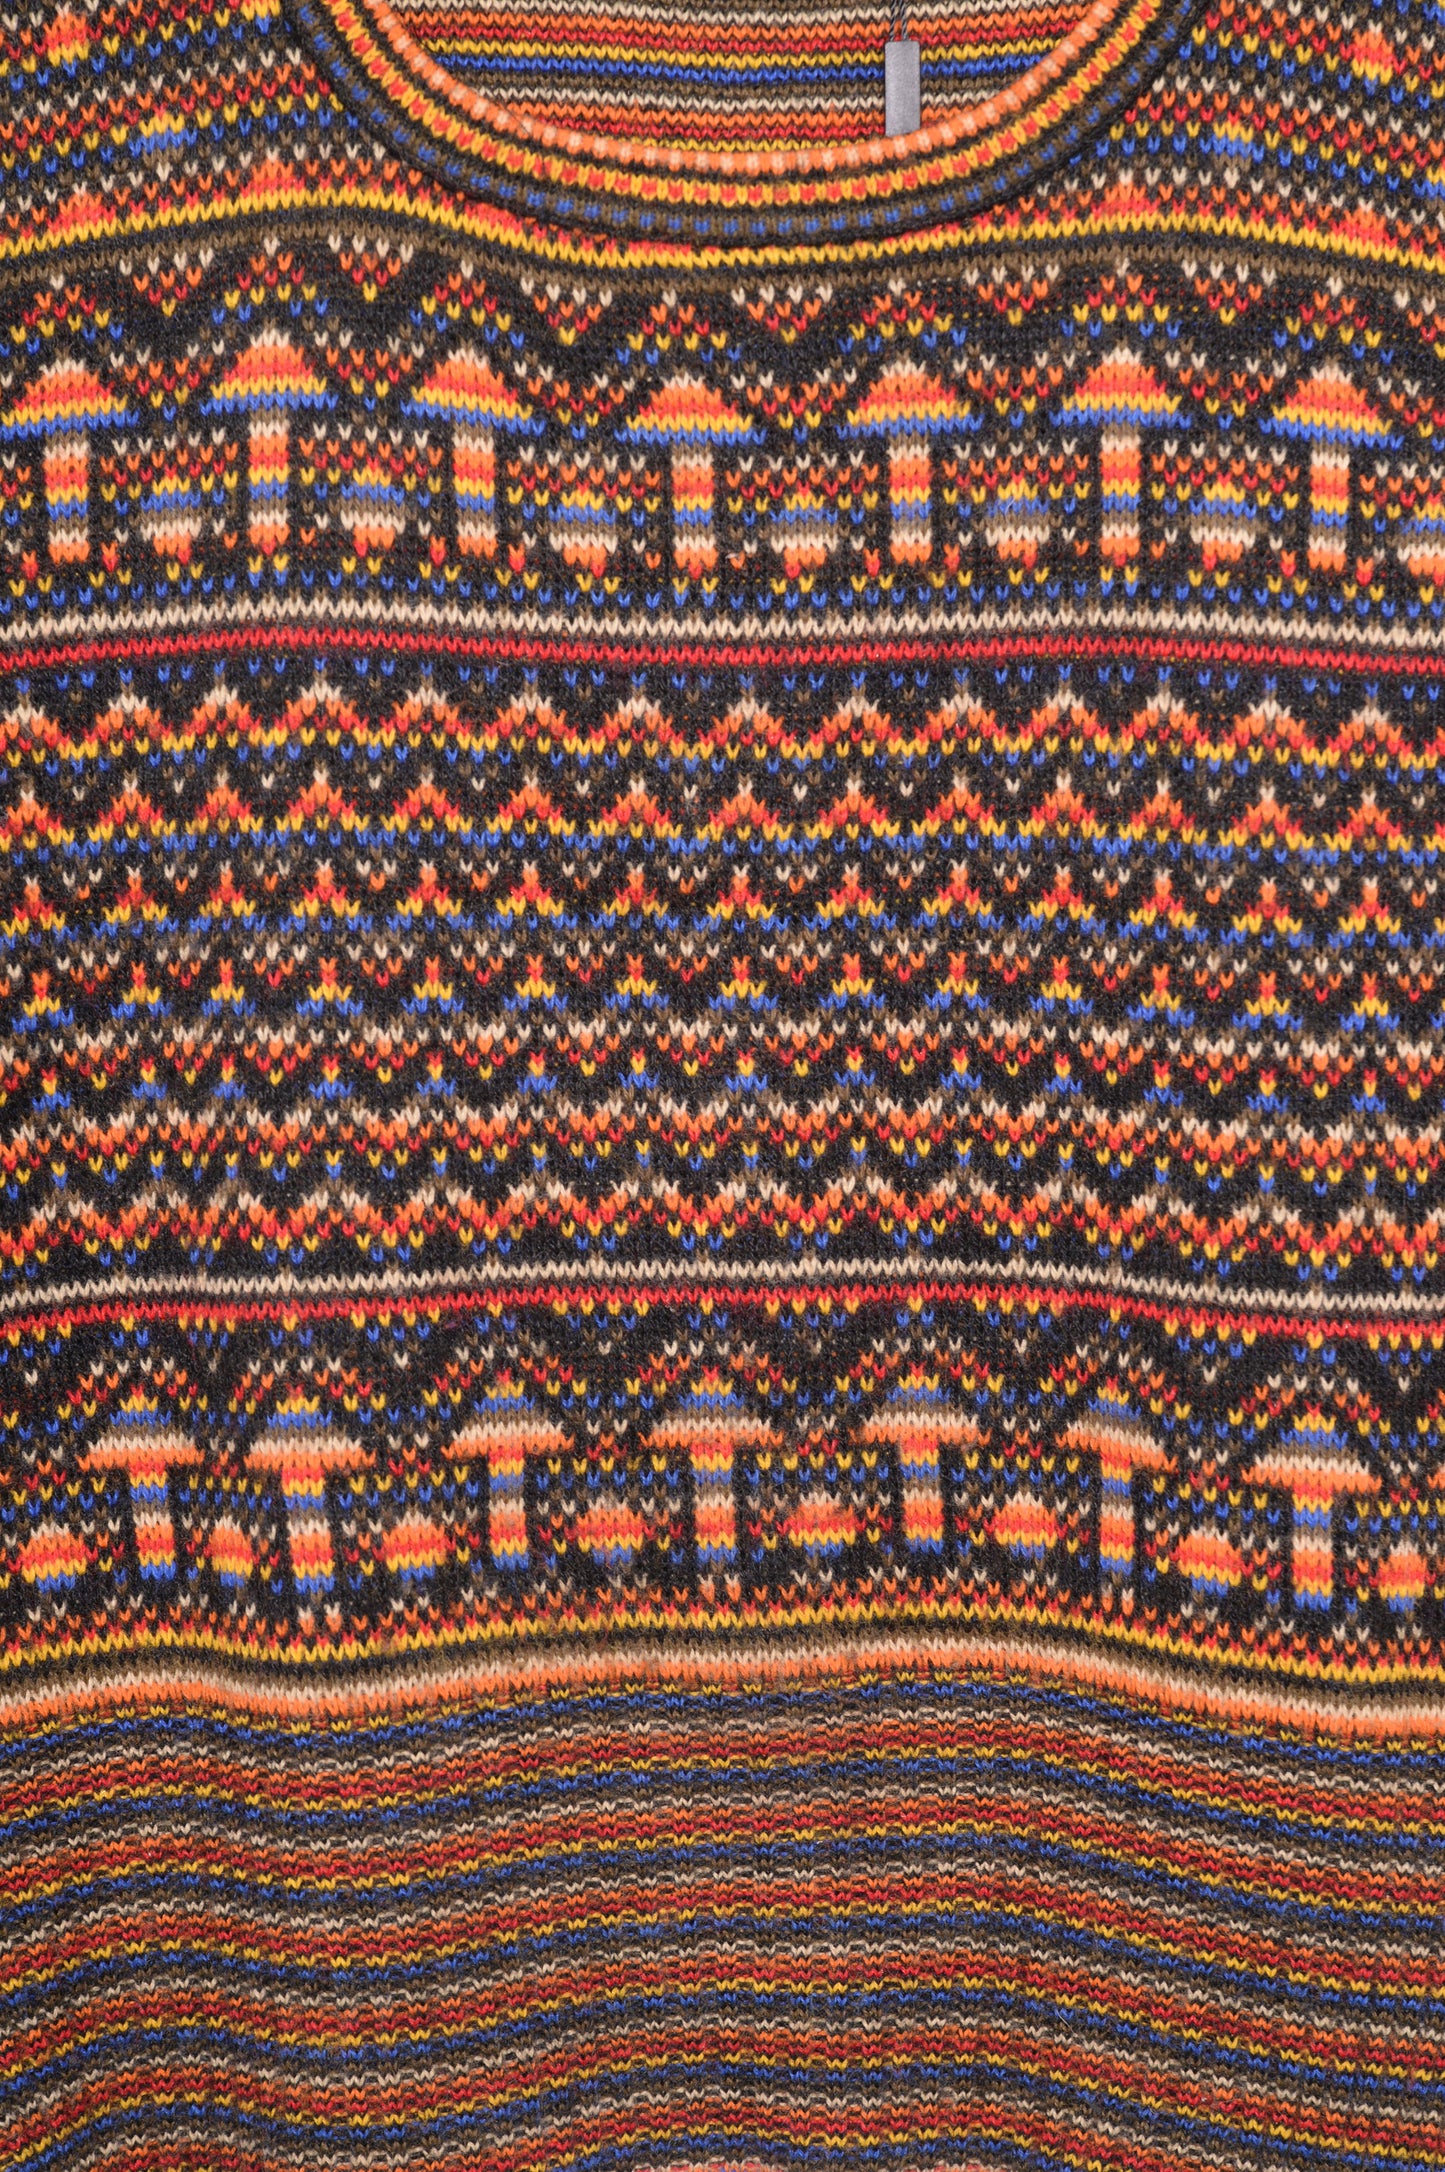 1970s Geometric Sweater Vest USA